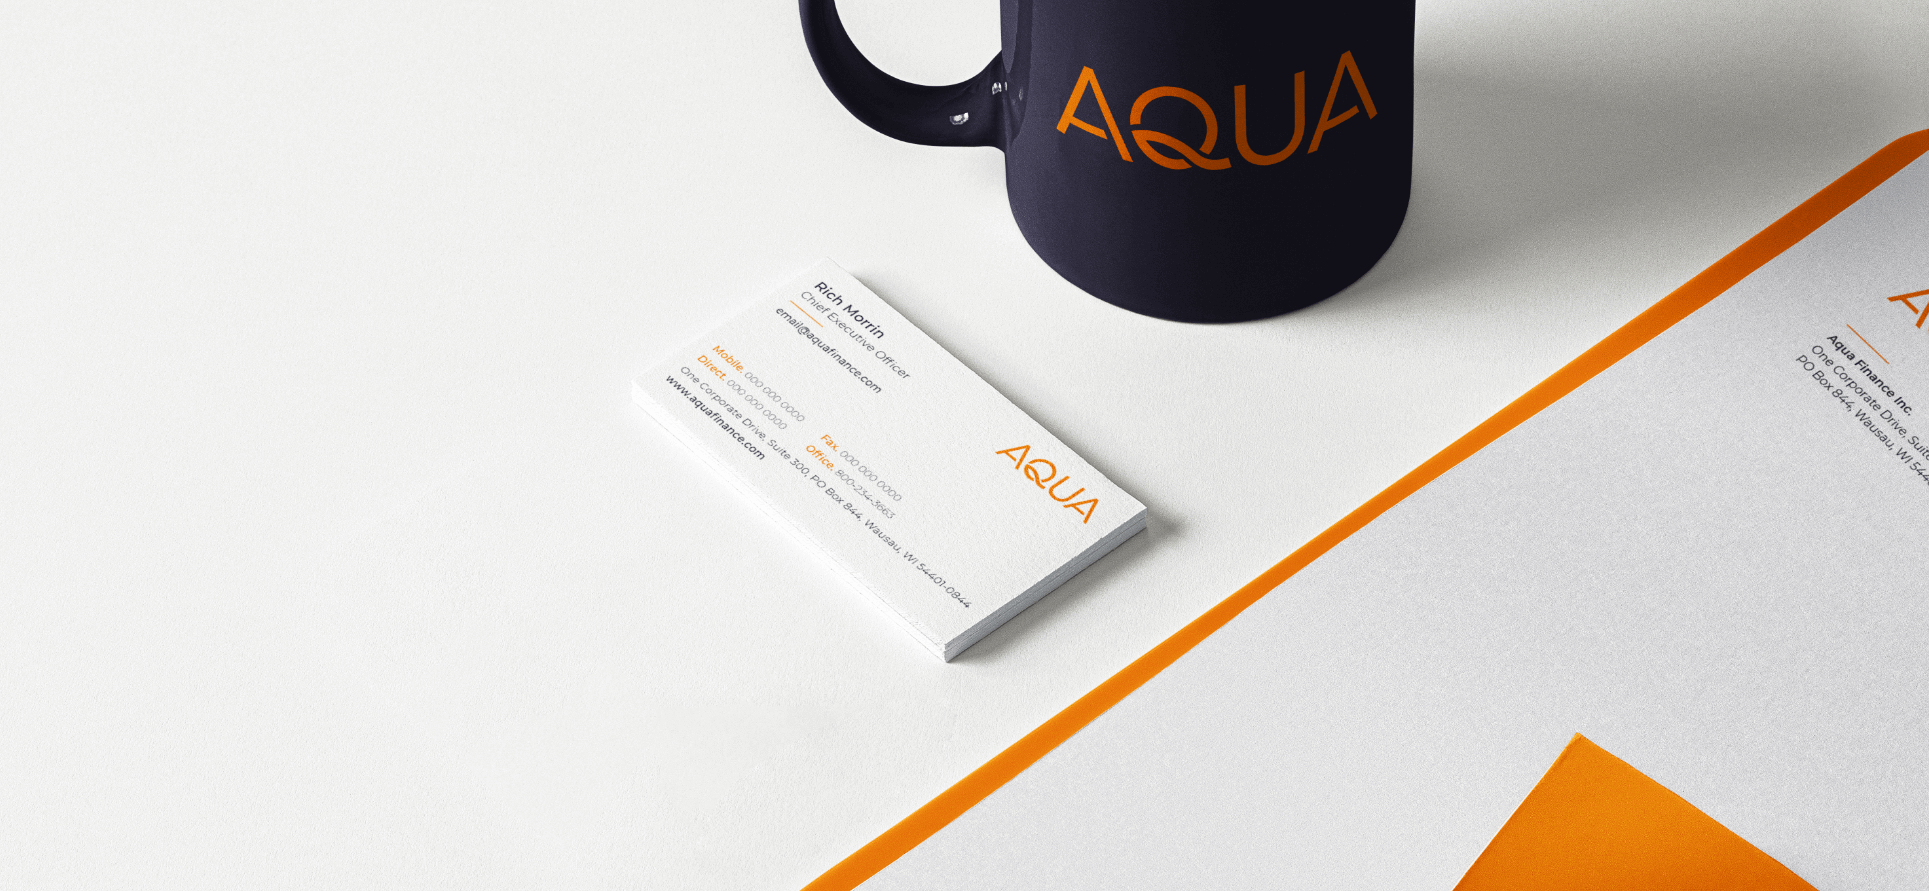 Papelería y taza con la marca Aqua.